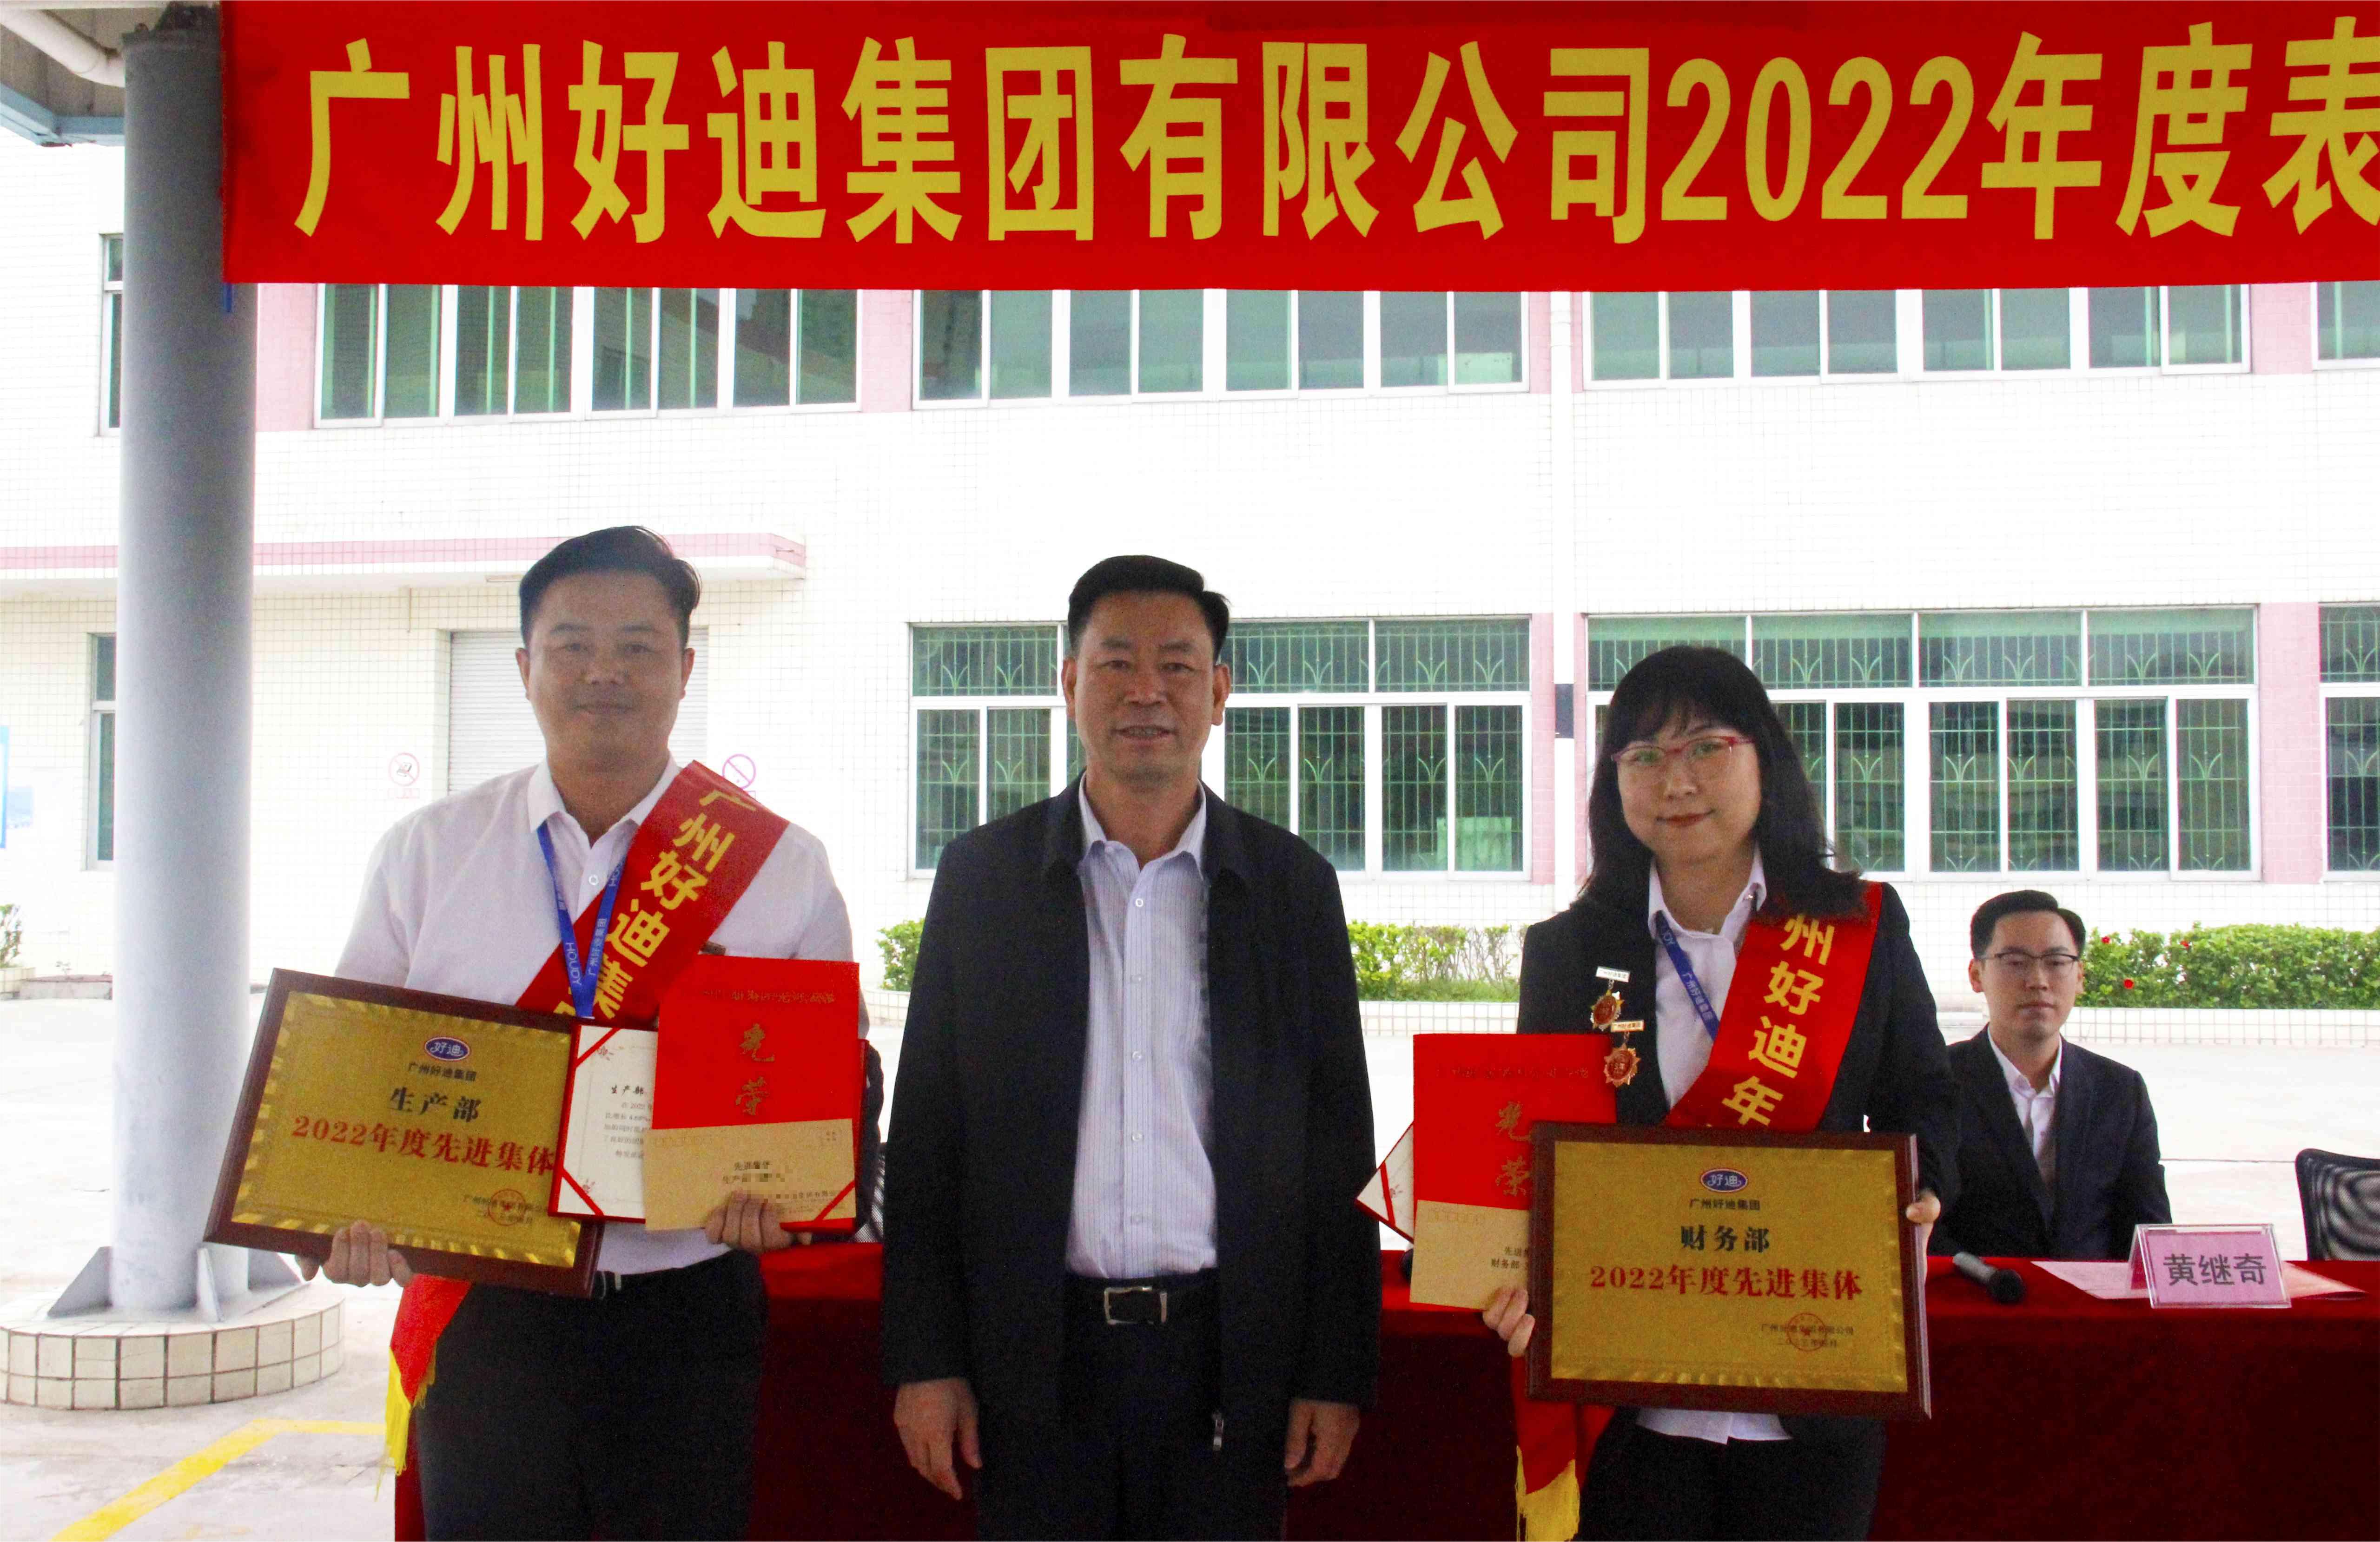 初心未变 破浪前行——广州好迪集团隆重召开2022年度表彰大会